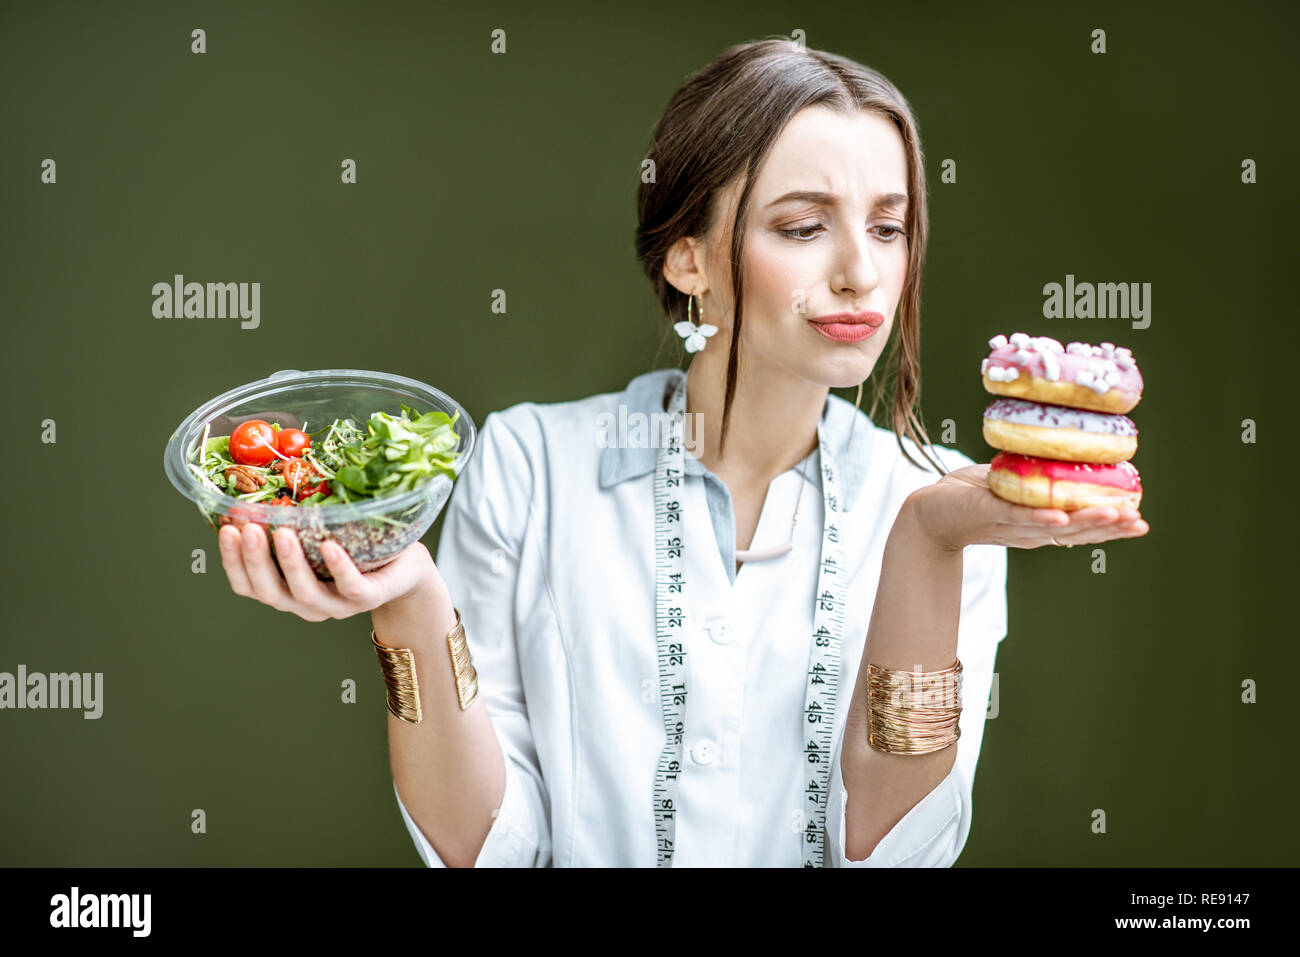 Jeune femme nutritionniste à sur le donuts avec émotions triste de choisir entre la salade et dessert malsaine sur le fond vert Banque D'Images